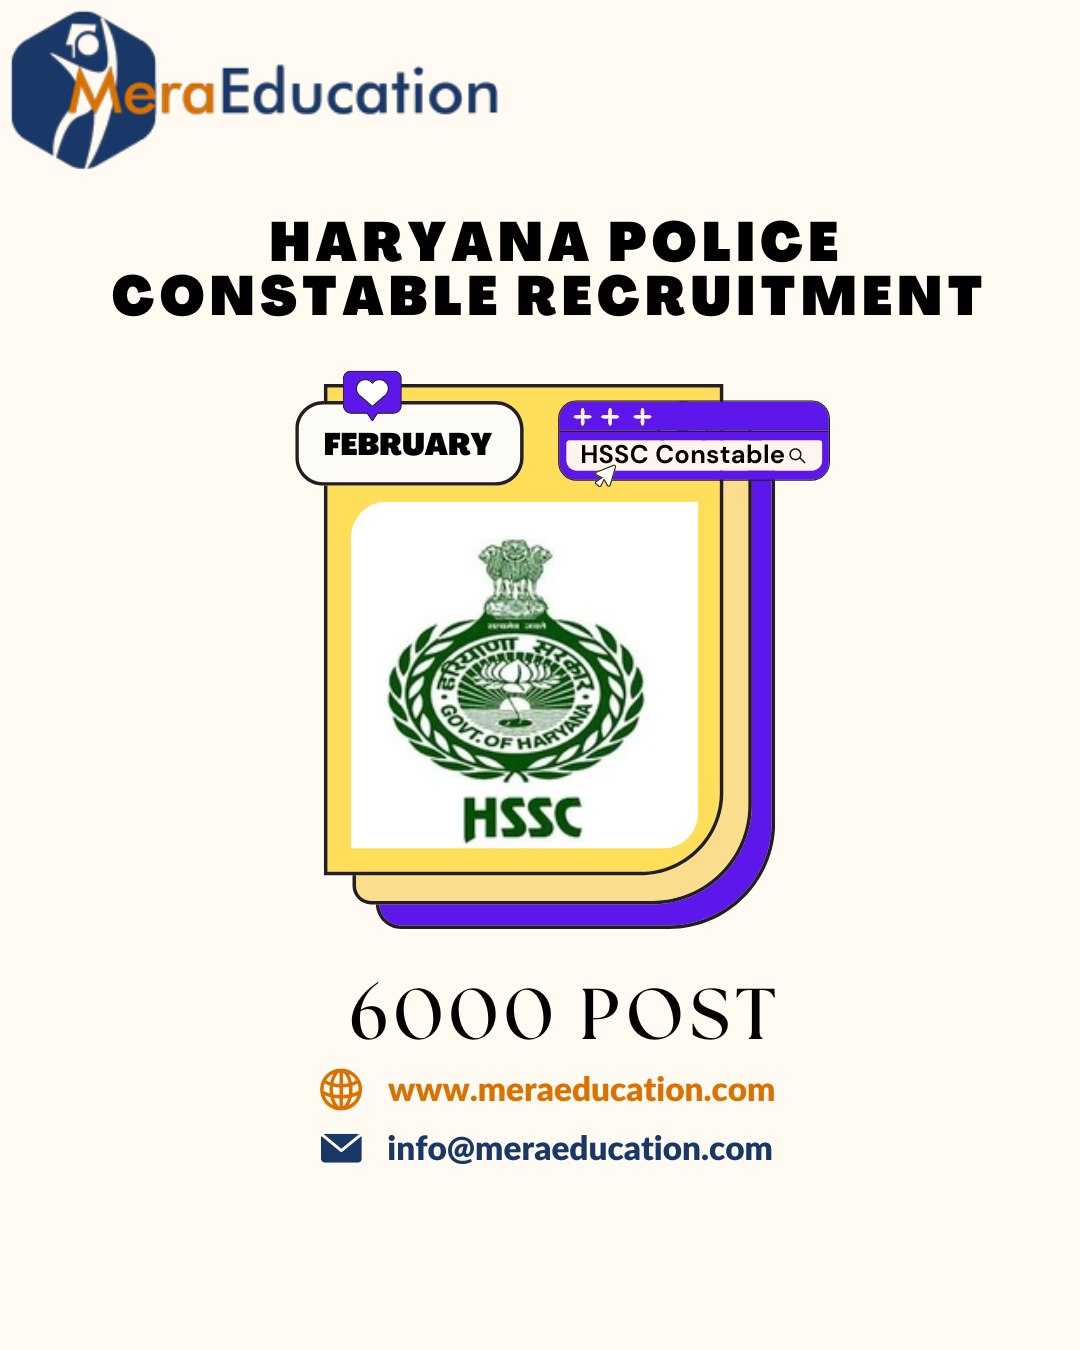 Haryana Police Constable MeraEducation